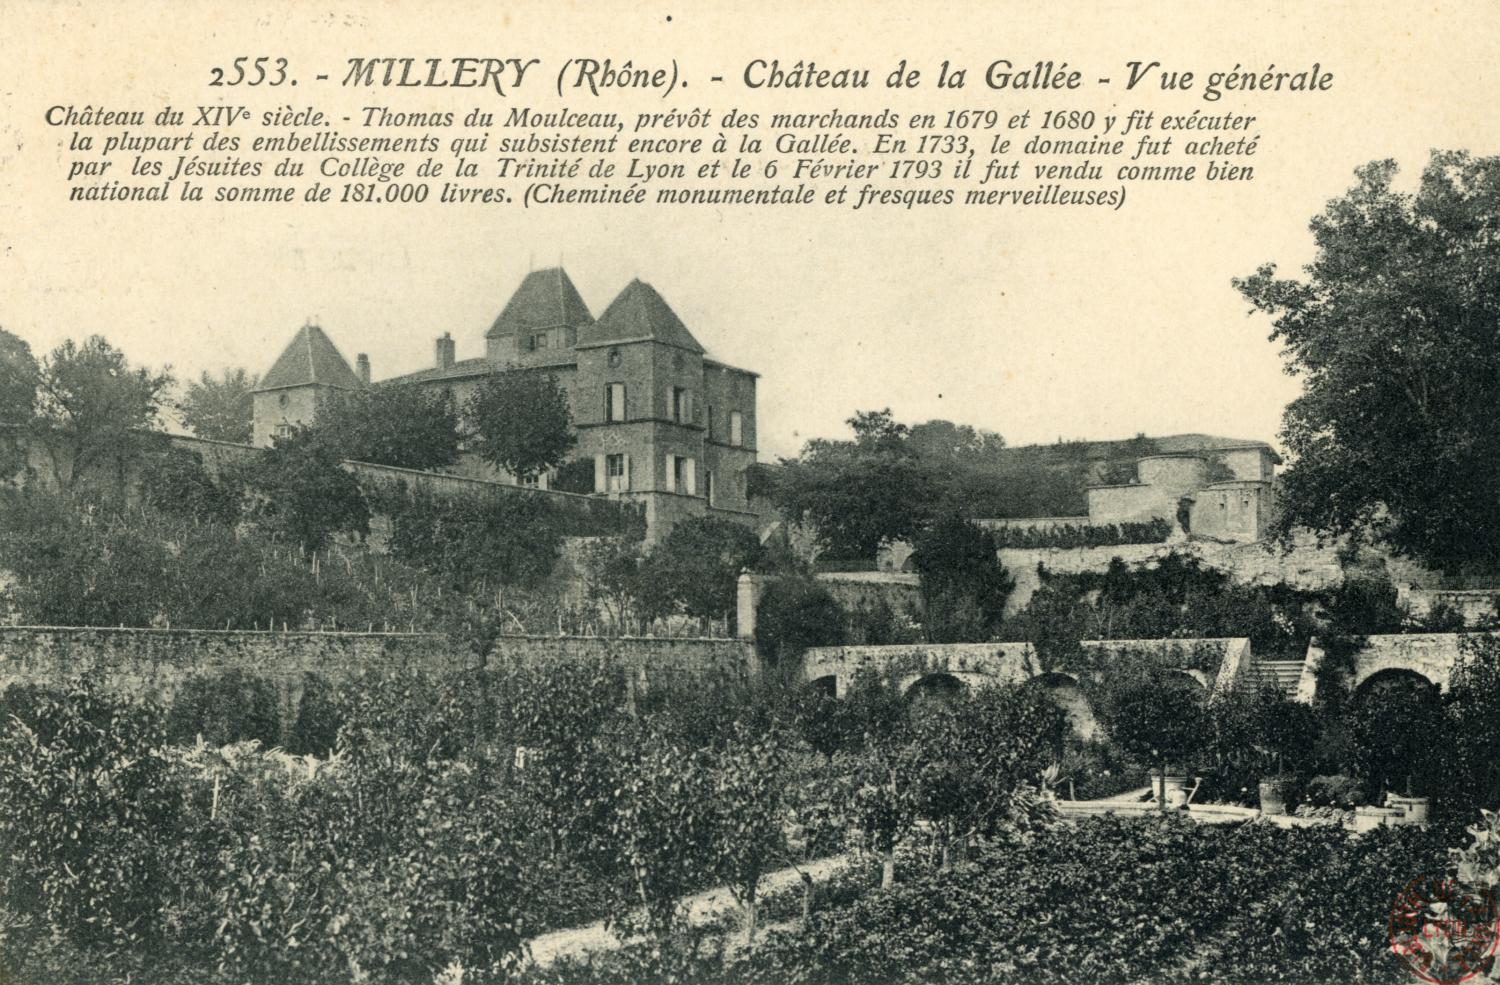 Millery (Rhône). - Château de la Gallée. - Vue générale